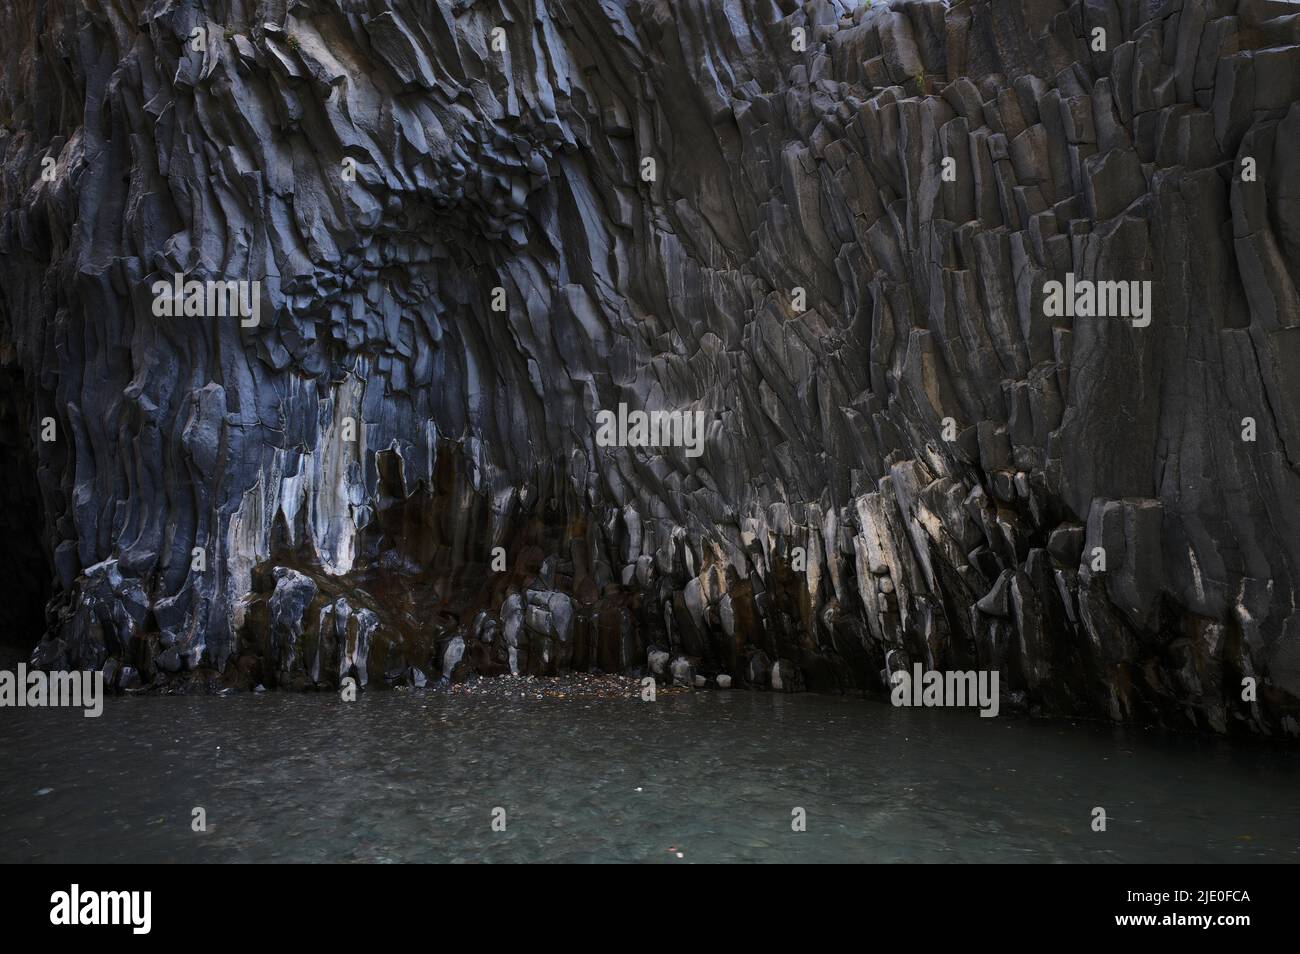 XXLava roccia nel parco fluviale Gole dell'Alcantara, Gola dell'Alcantara, Sicilia, Italia, Europa Foto Stock